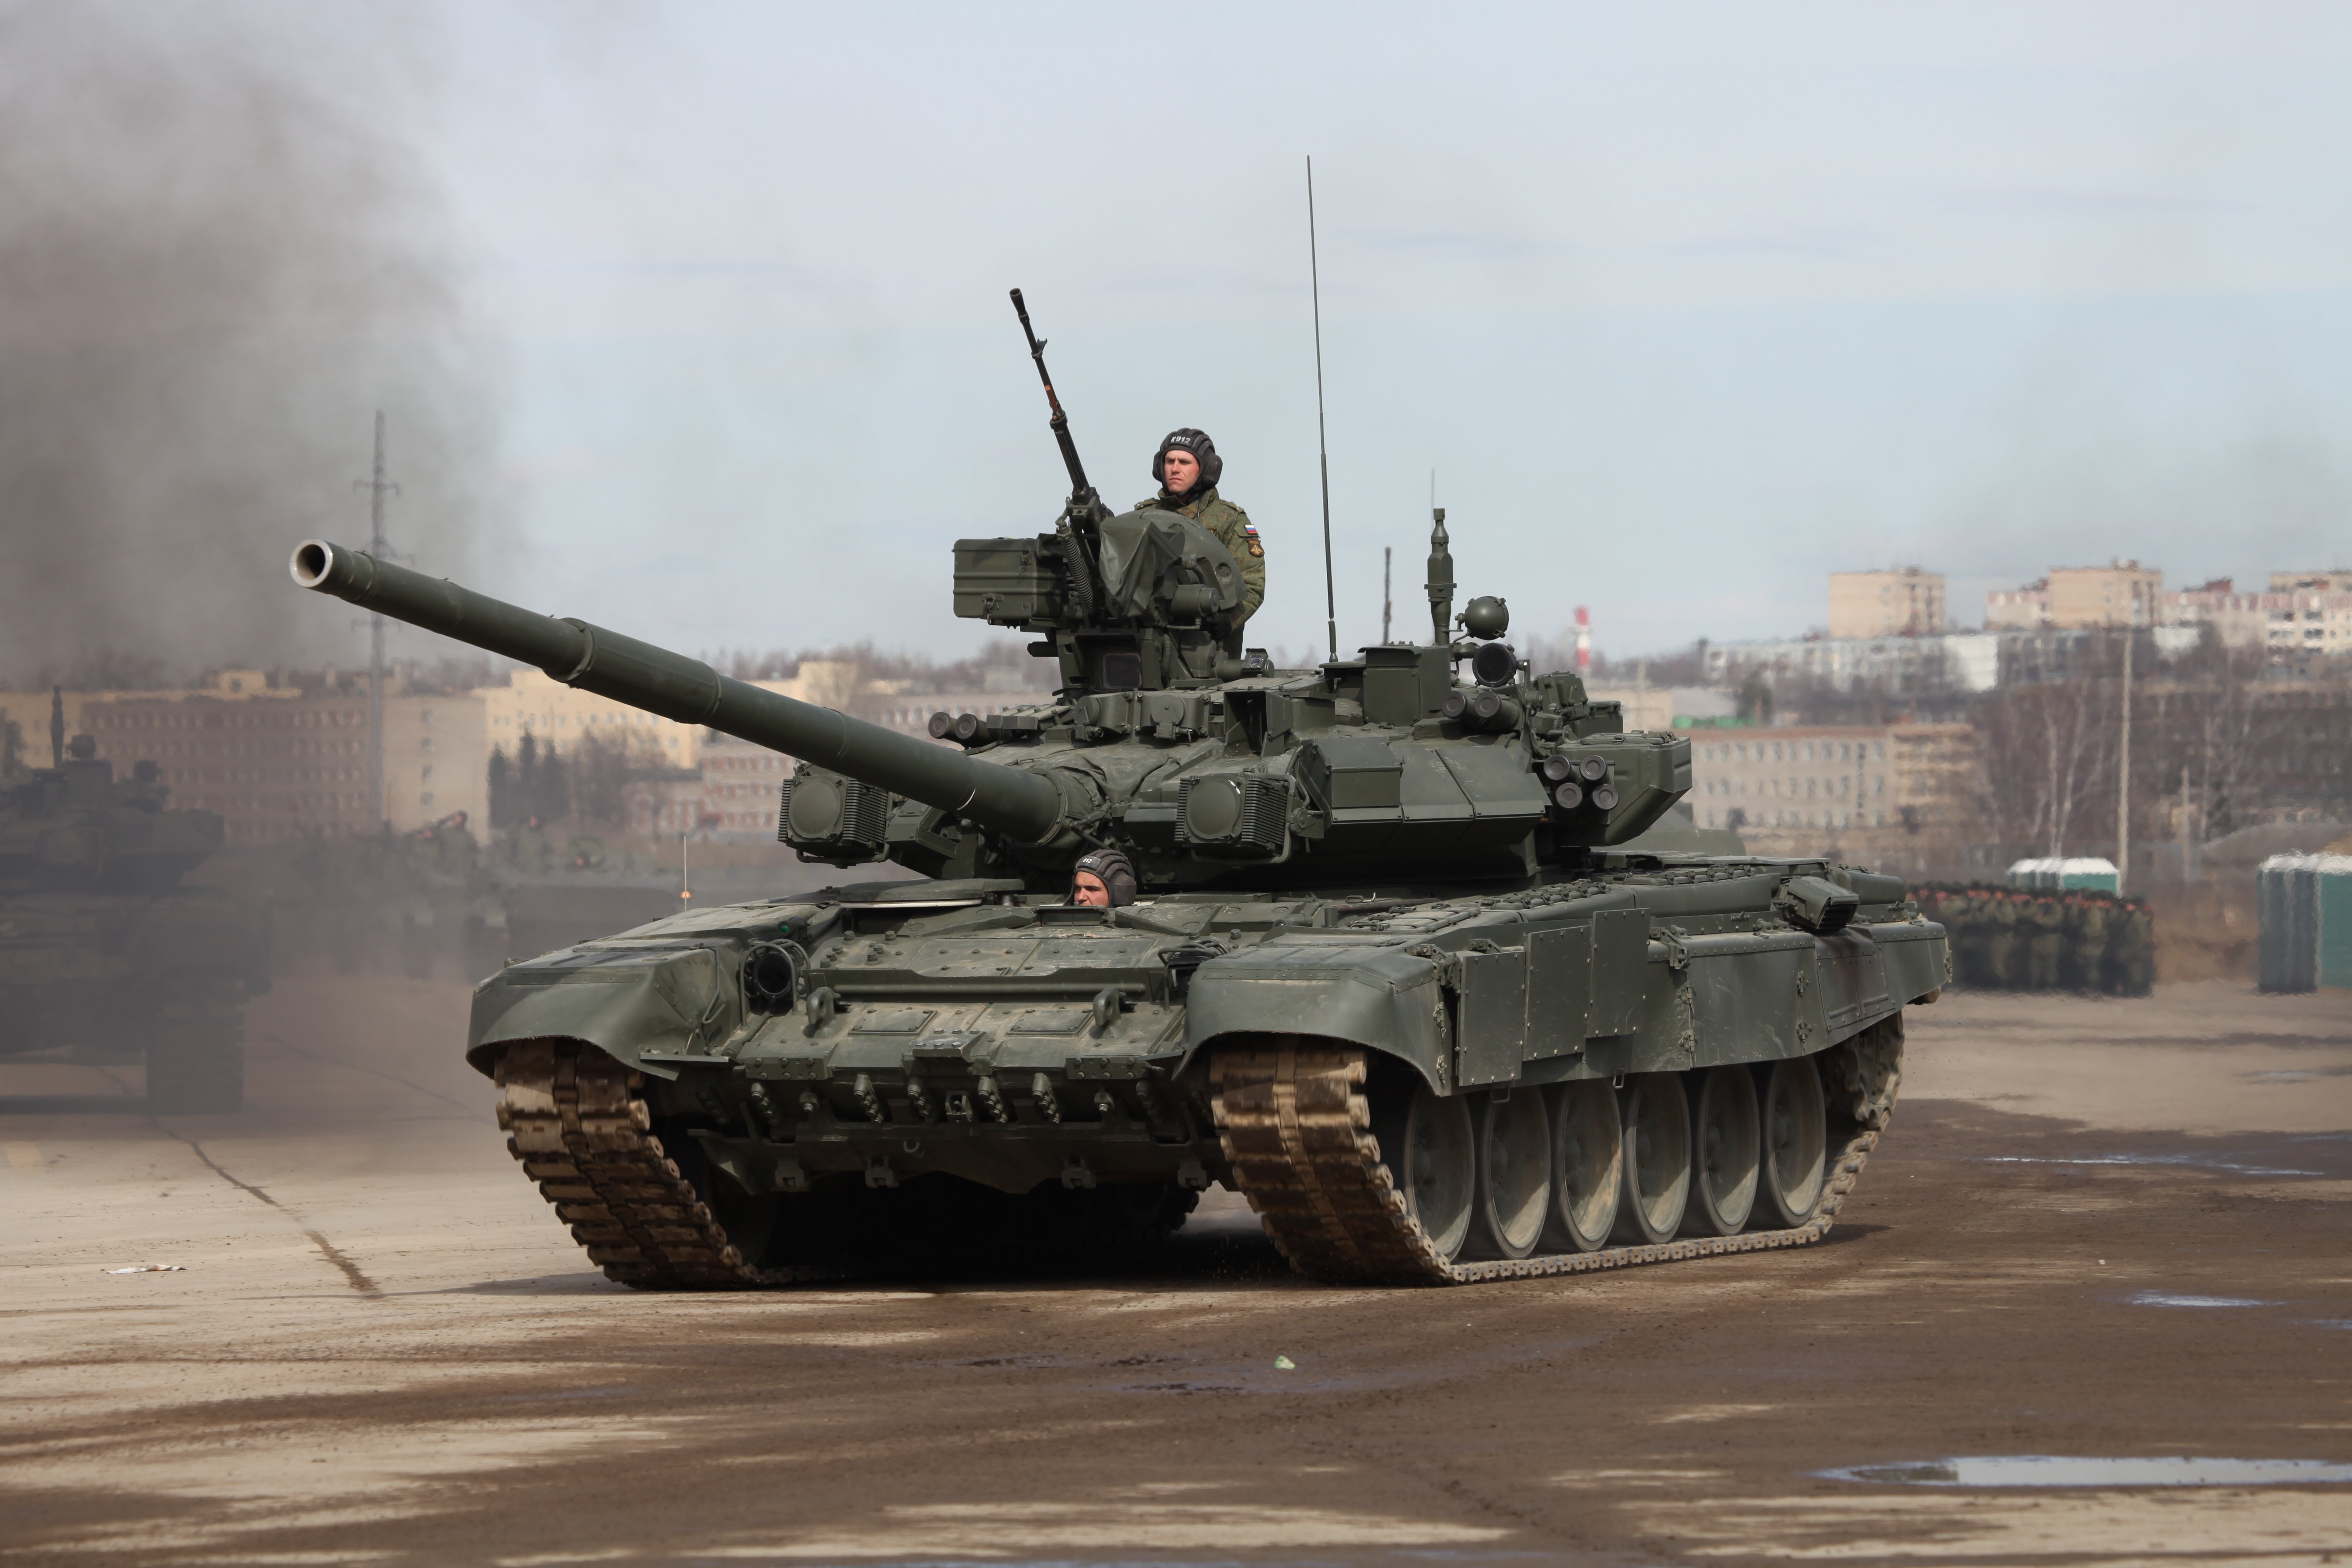 russian t-90a main battle tank academy